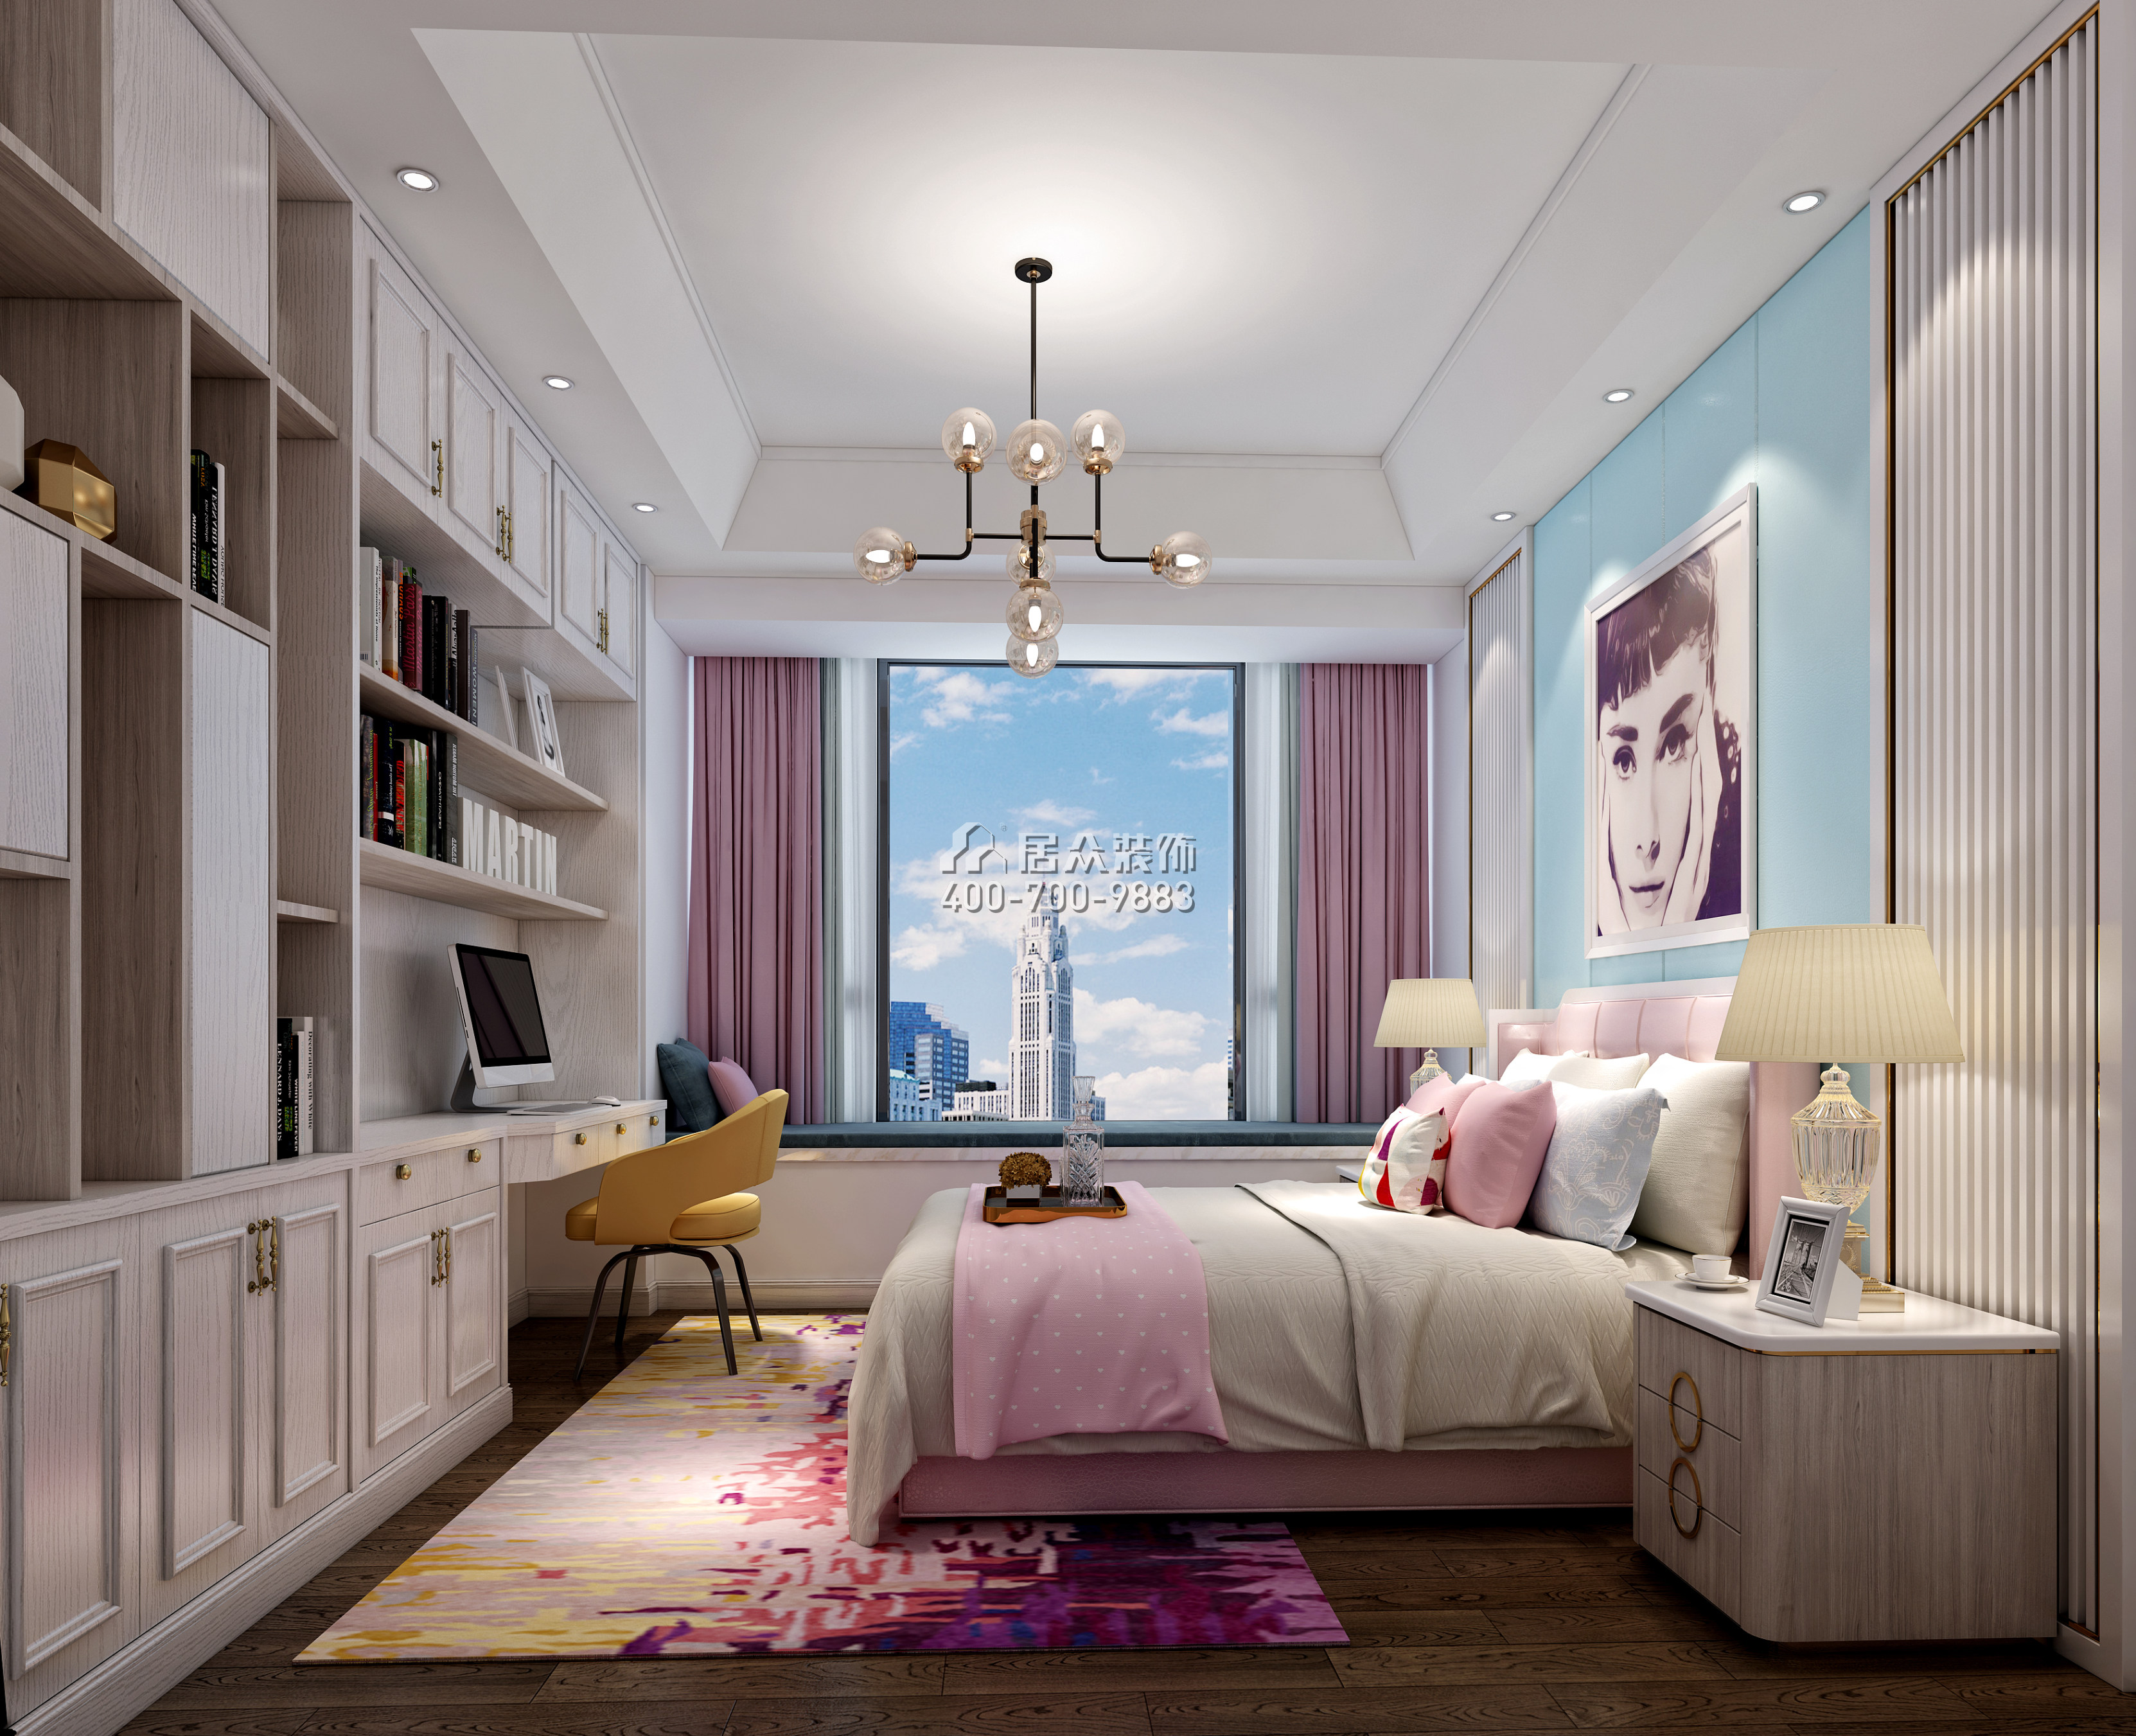 锦绣山河200平方米欧式风格平层户型卧室装修效果图